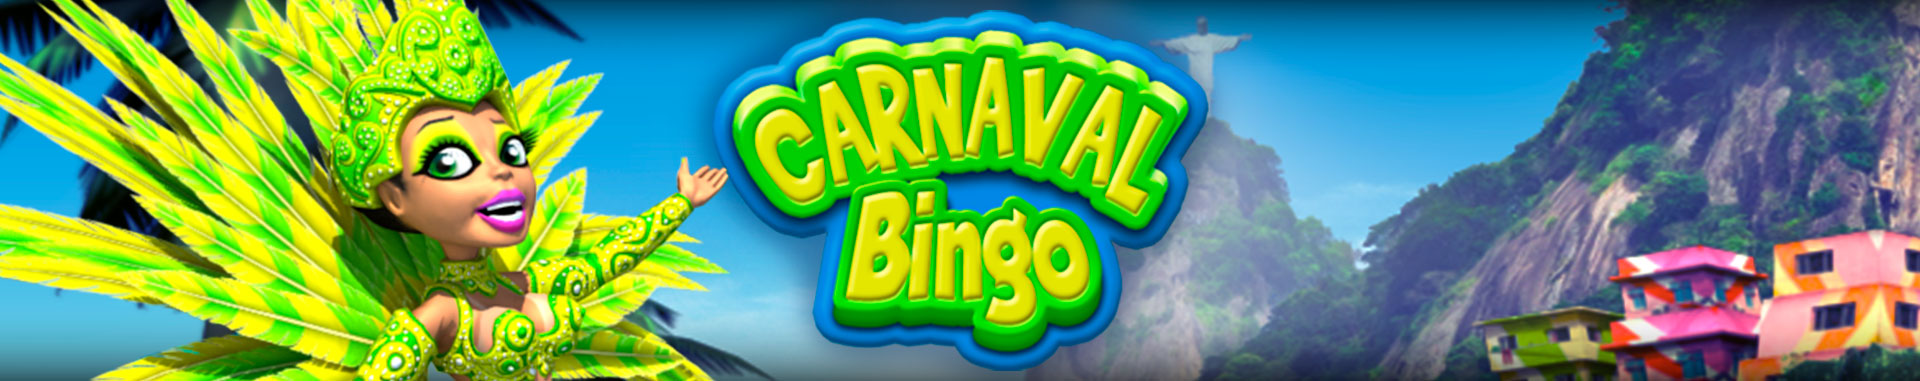 Video Bingo Online Carnaval